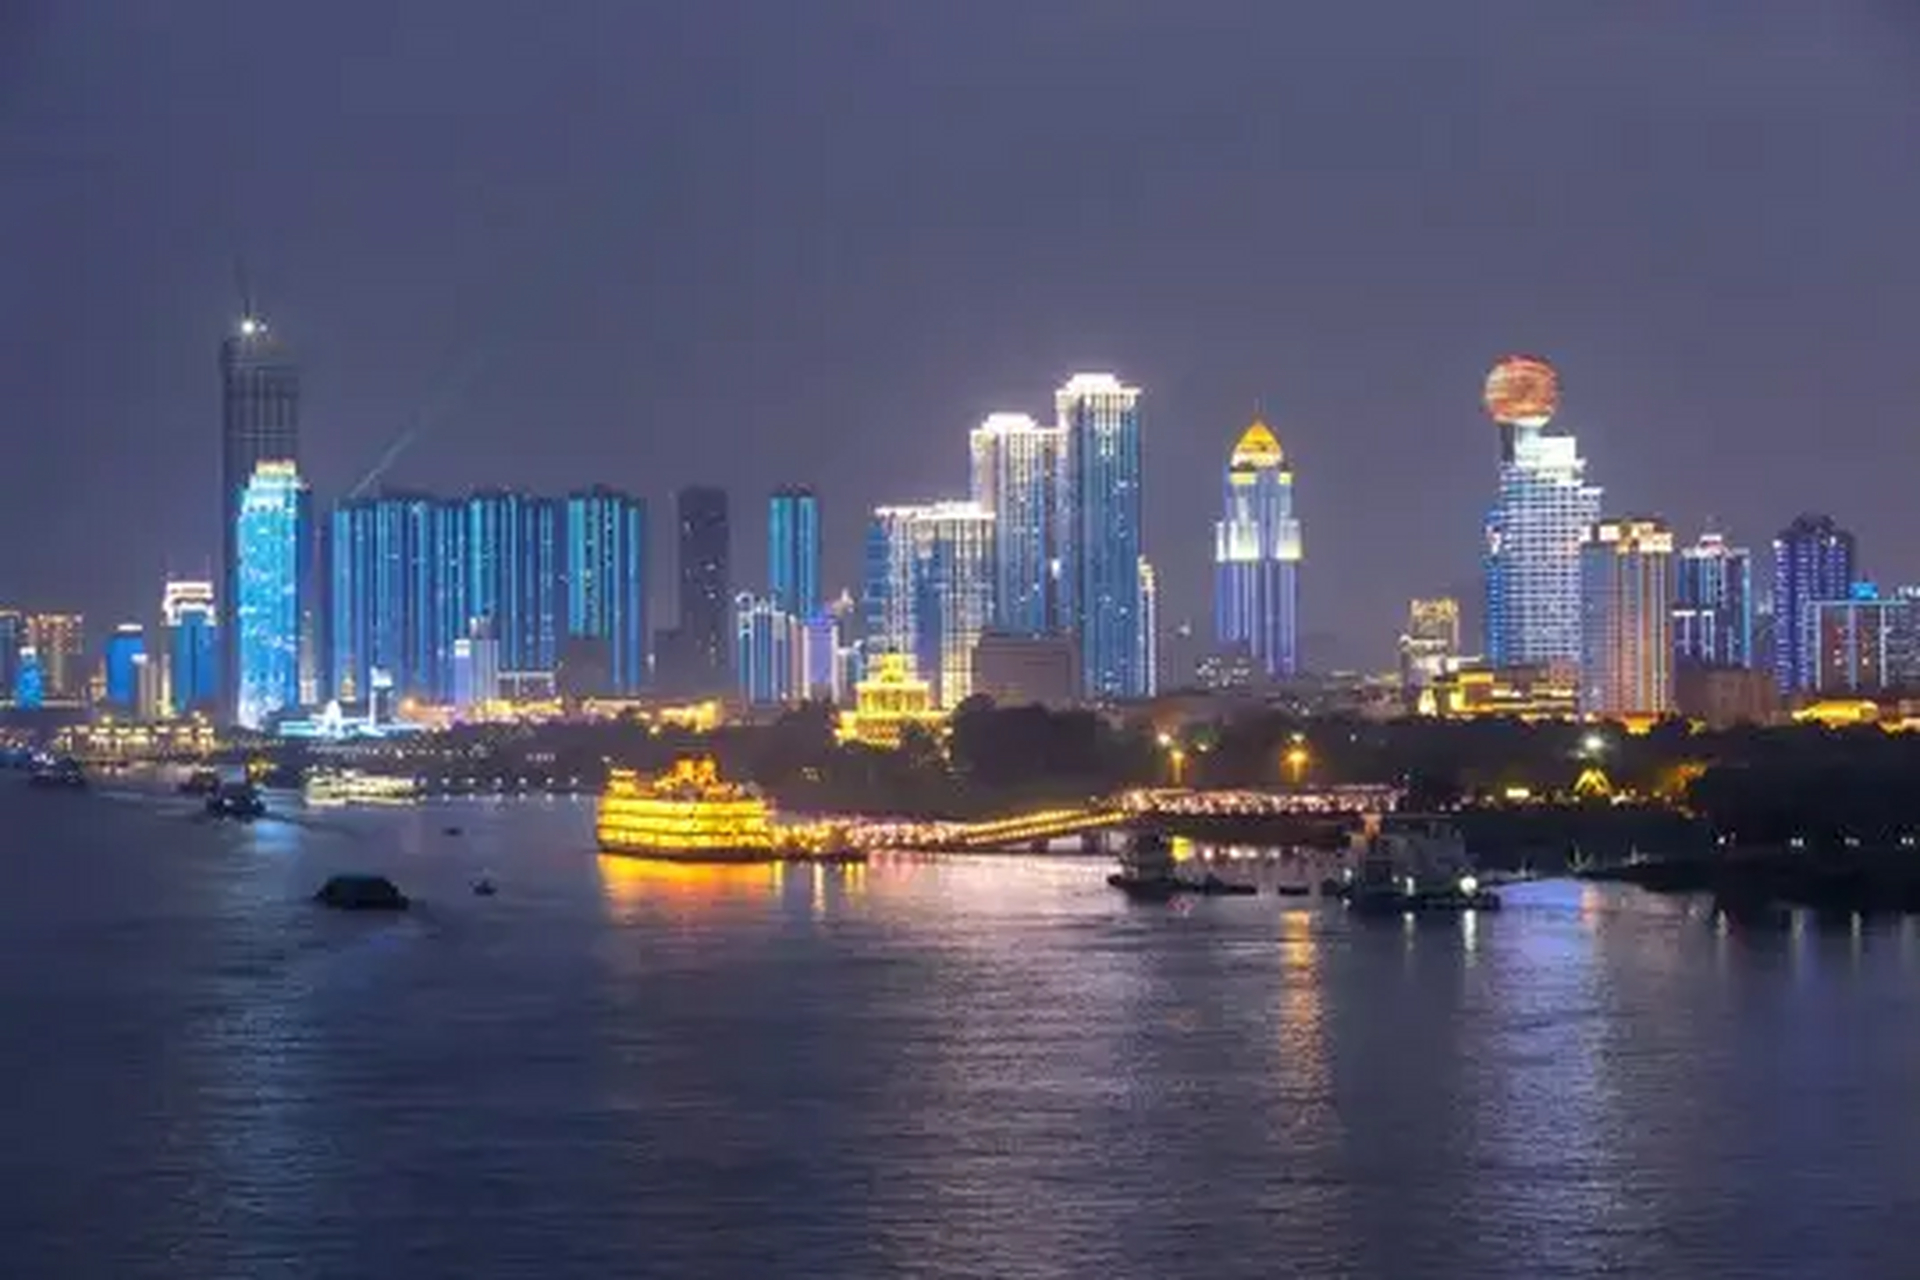 有空吗 可以看看武汉的江滩 这是长江汉江 最靓丽的模样 特别是夜晚